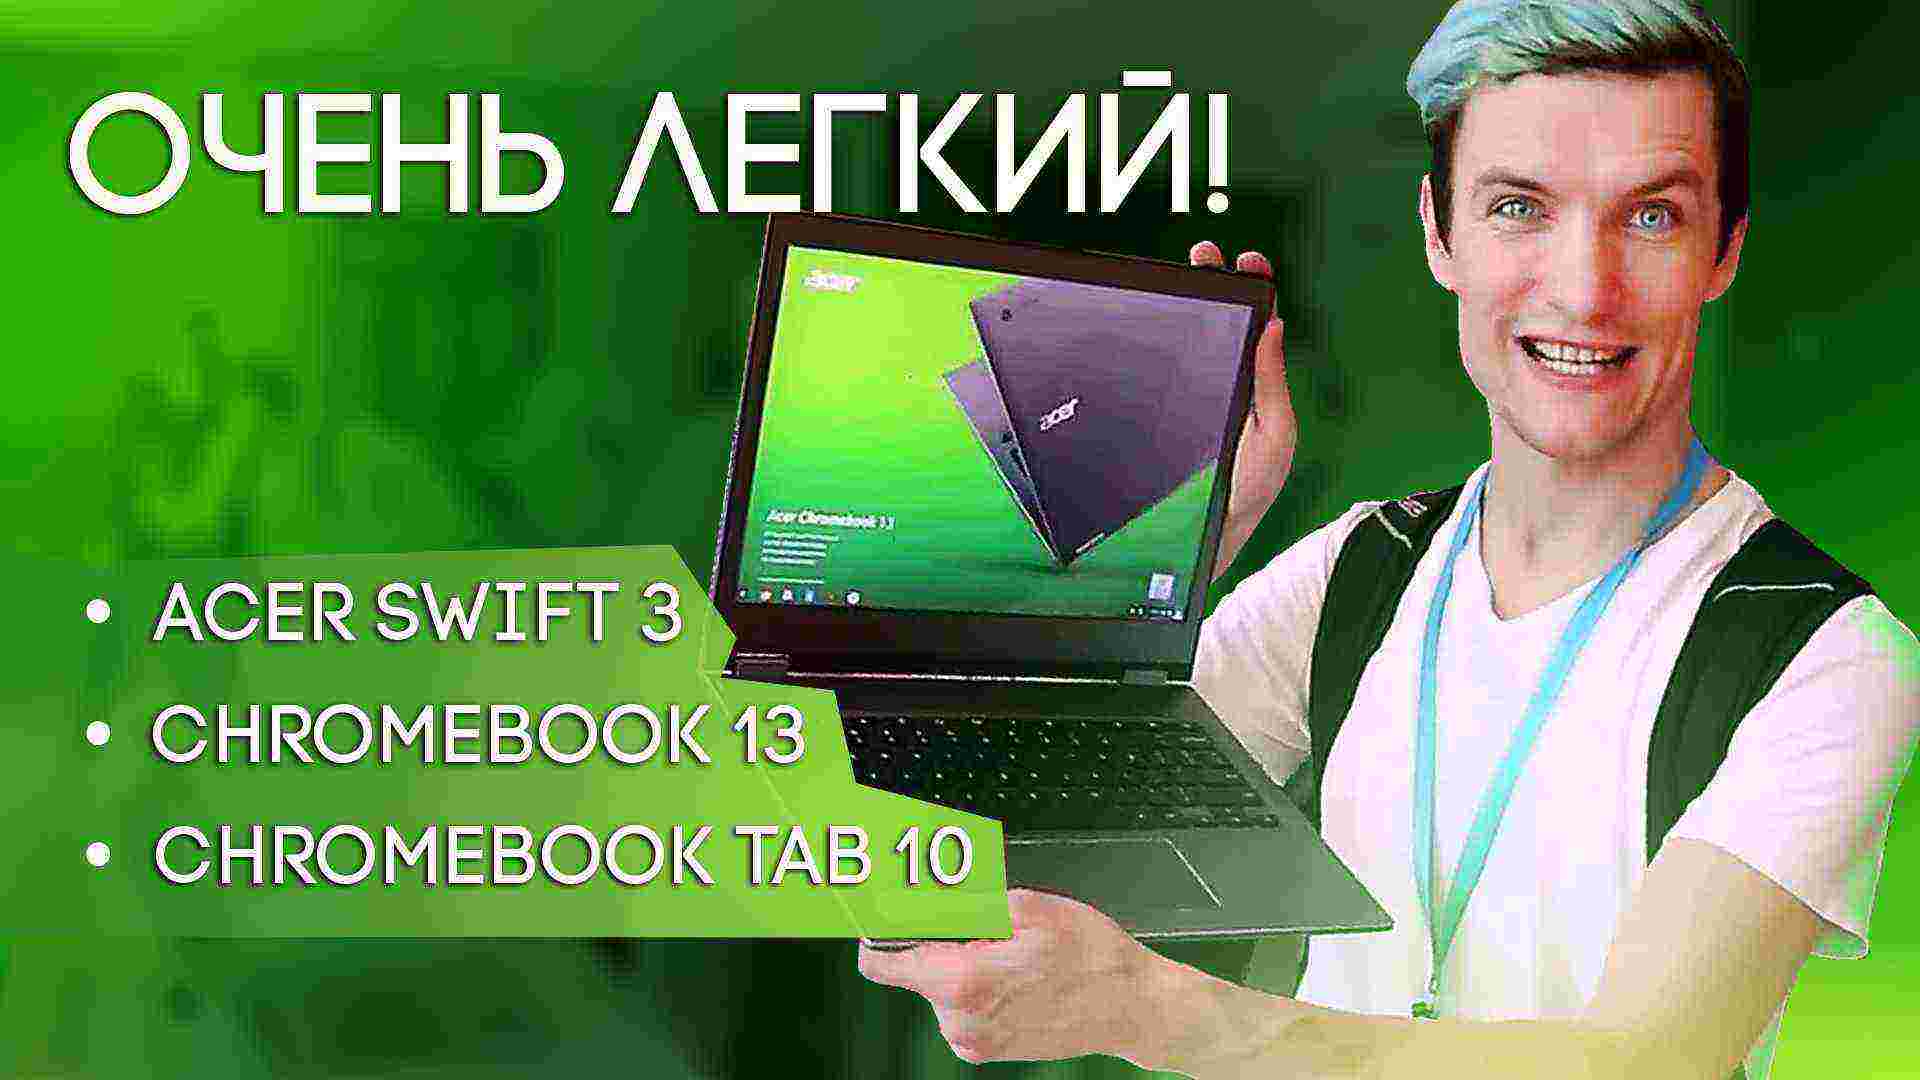 Swift 3 и новые Chromebook от Acer – Сёма в Нью-Йорке!